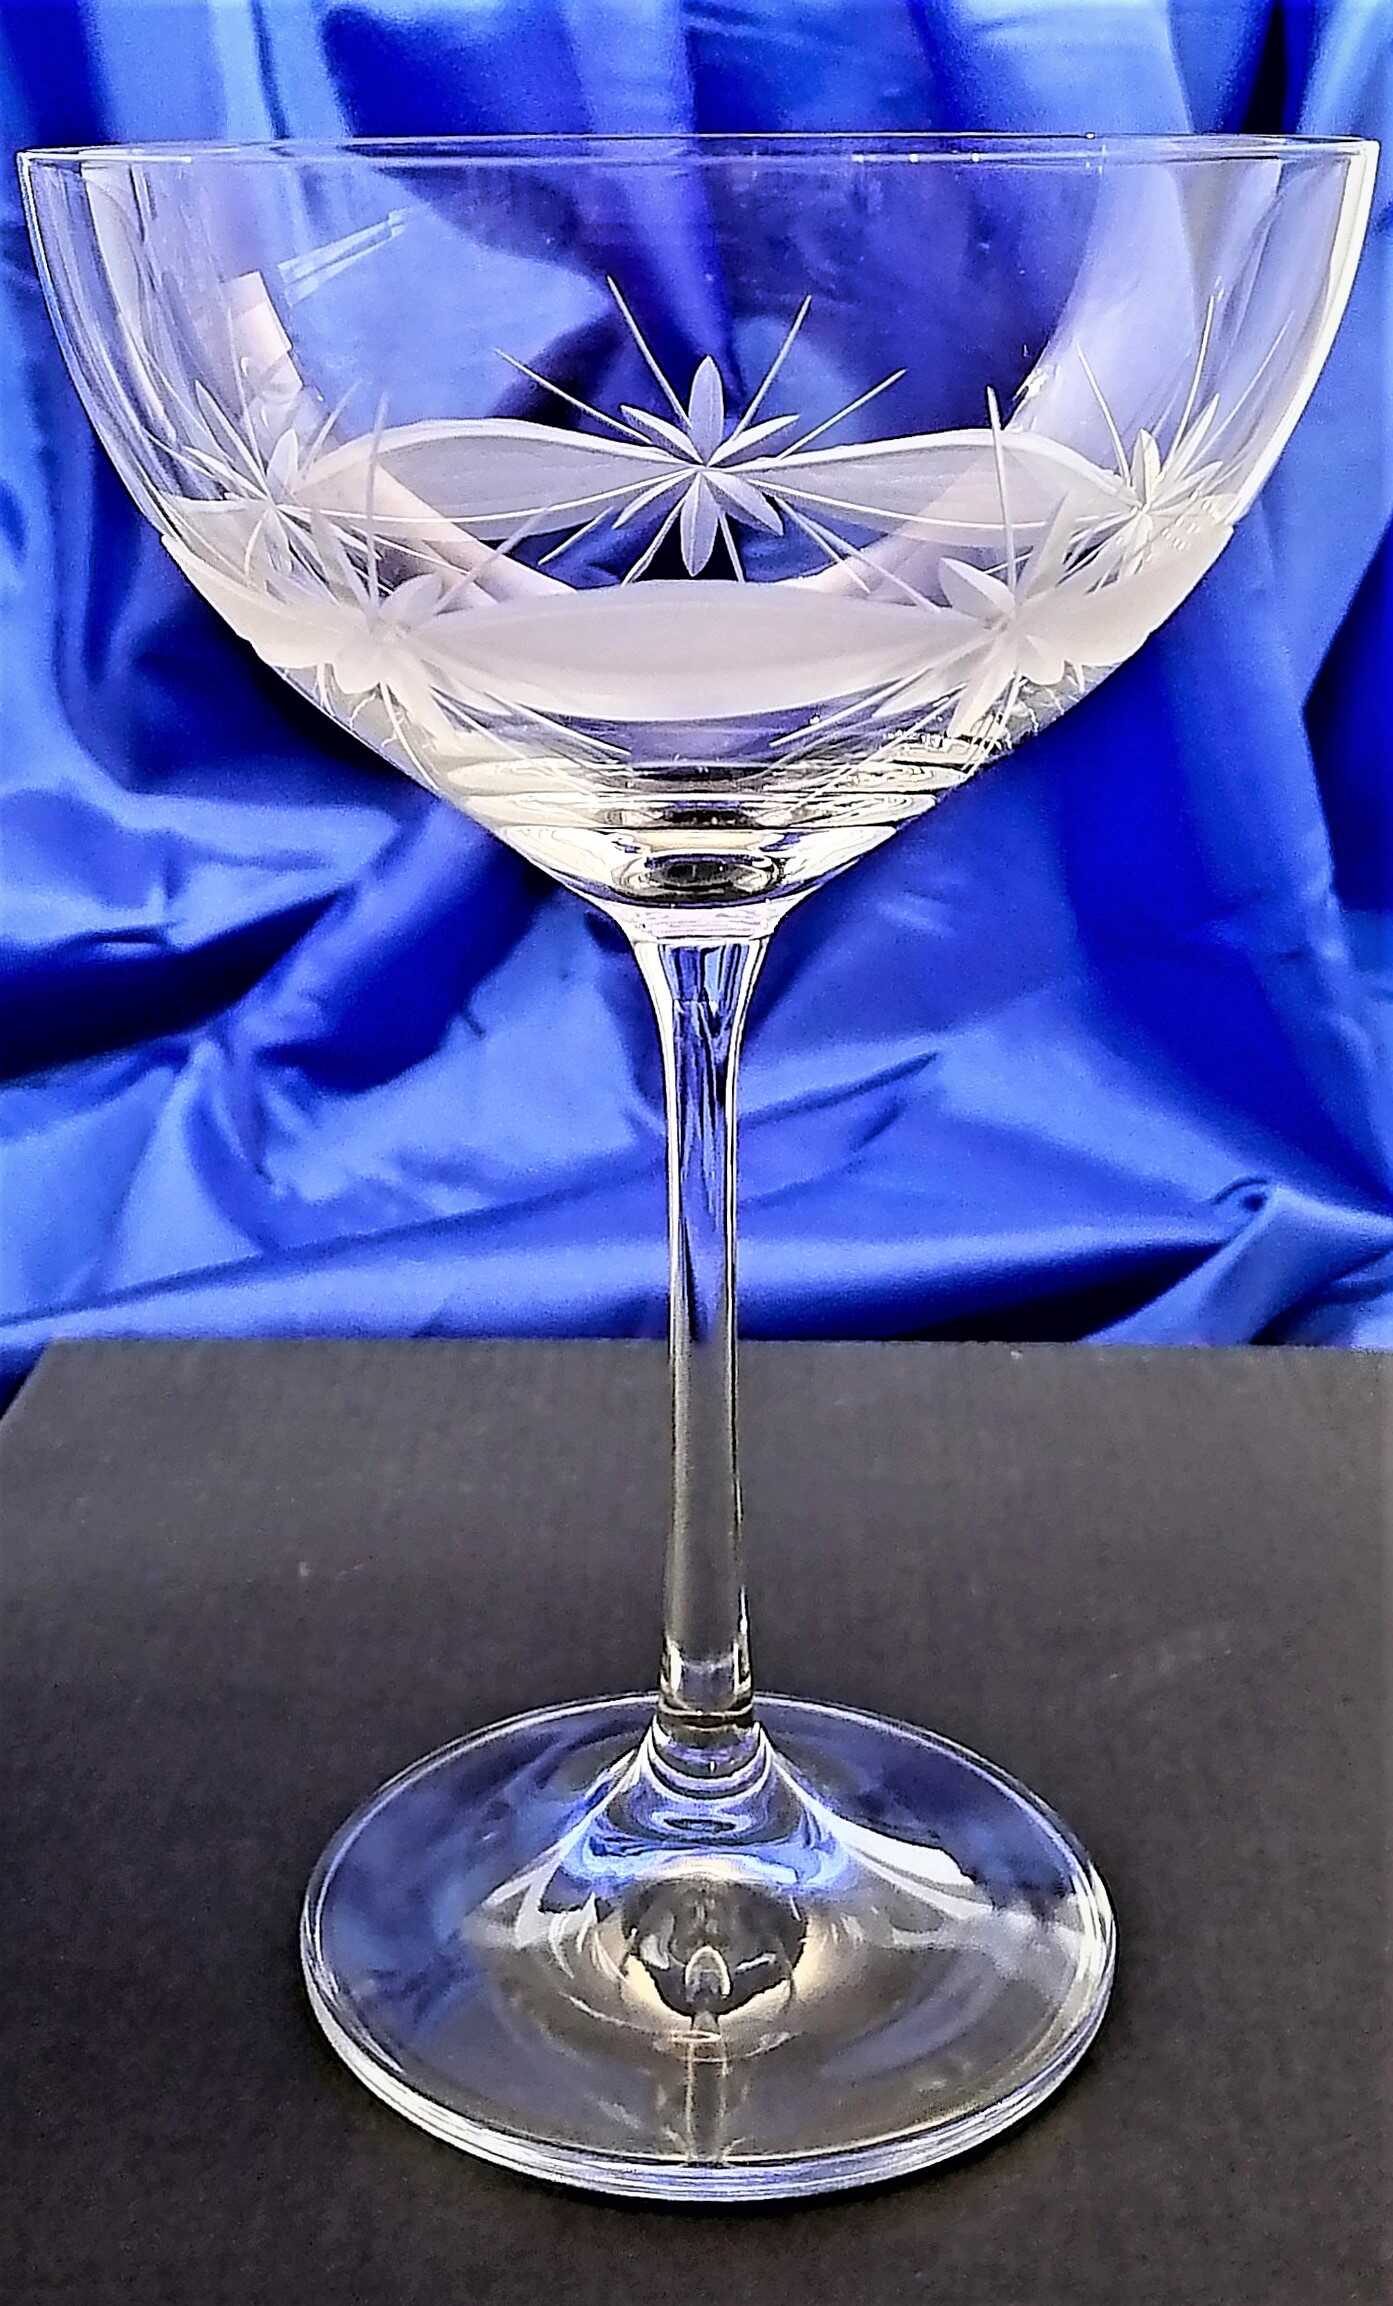 Lsg-Kristall Champagner/Sektschale Kristallgläser Hand geschliffen Kante SSCH-166 340 ml 4 Stück .